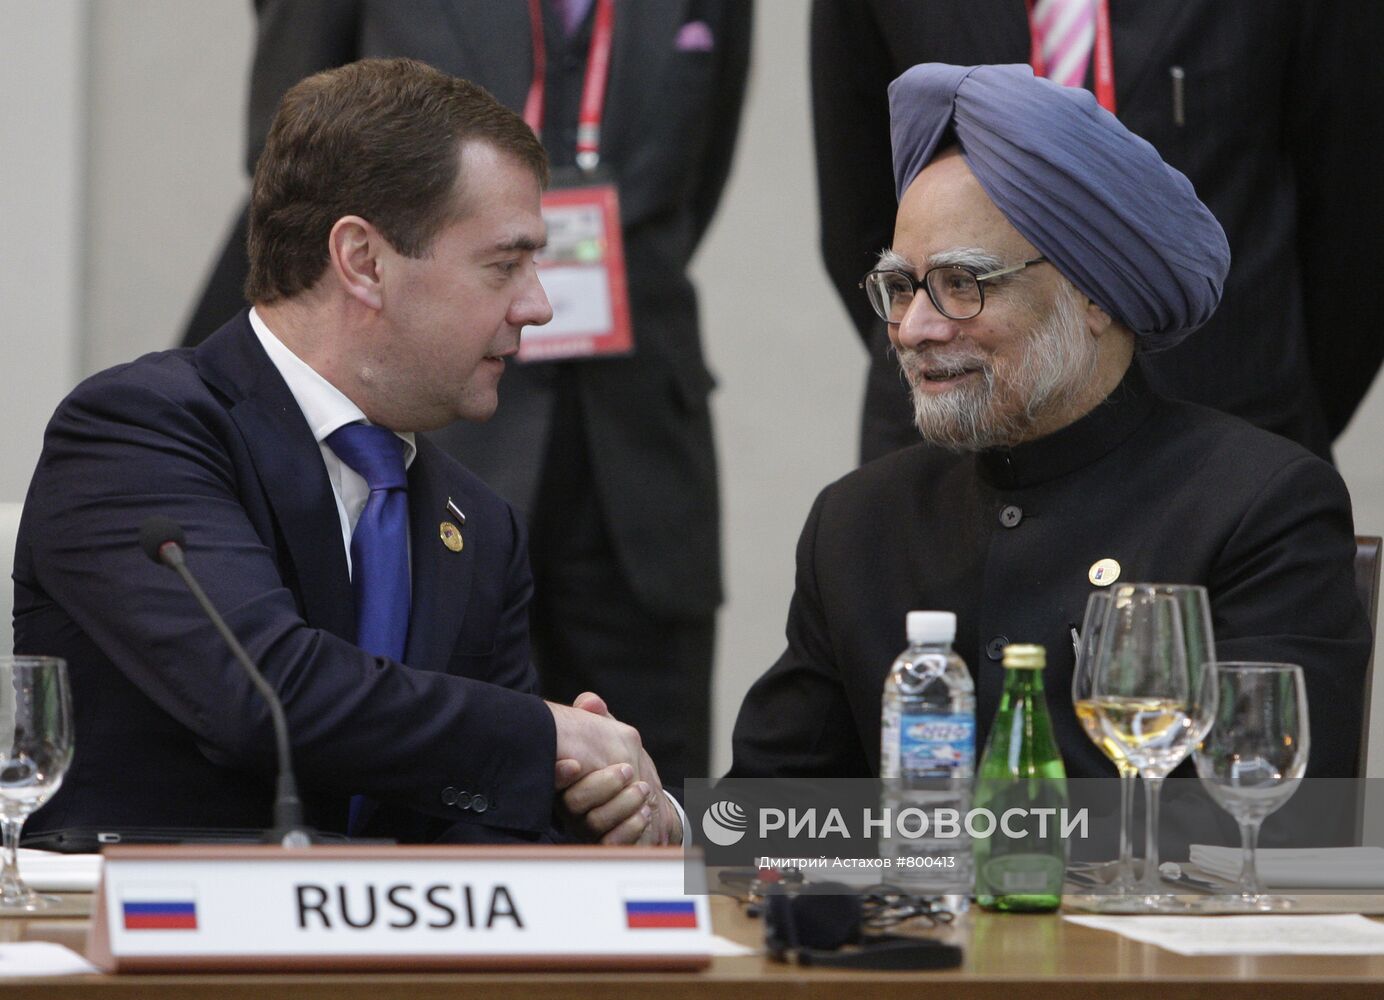 Д.Медведев принимает участие в саммите G20 в Сеуле